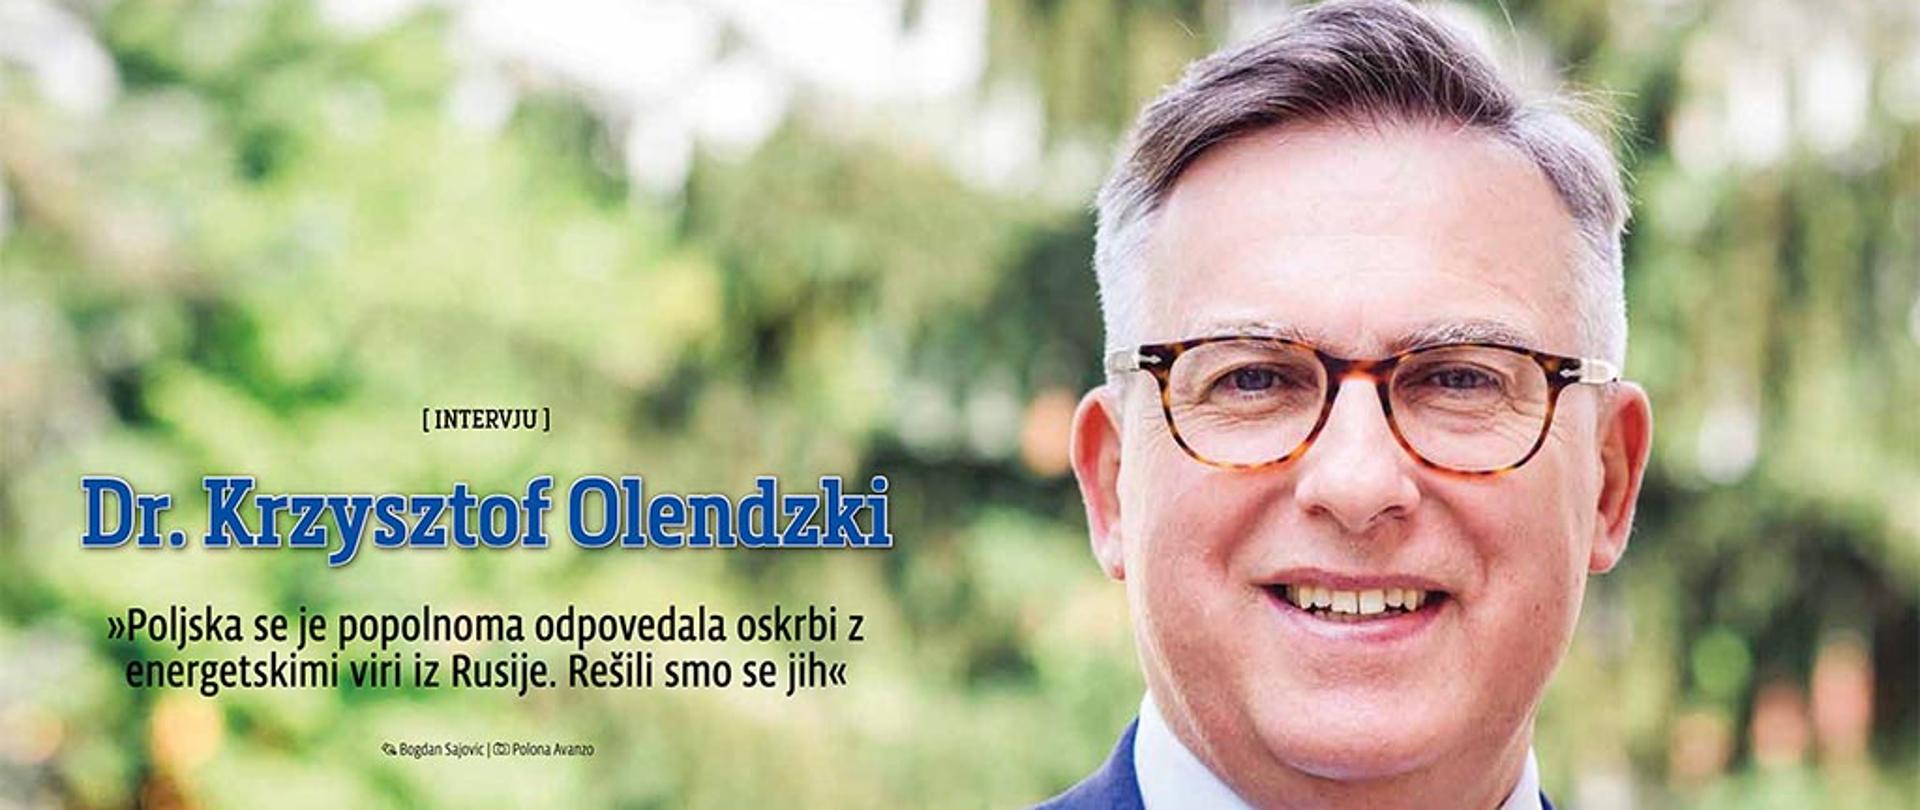 Wywiad Ambasadora Krzysztofa Olendzkiego dla Tygodnika Demokracija